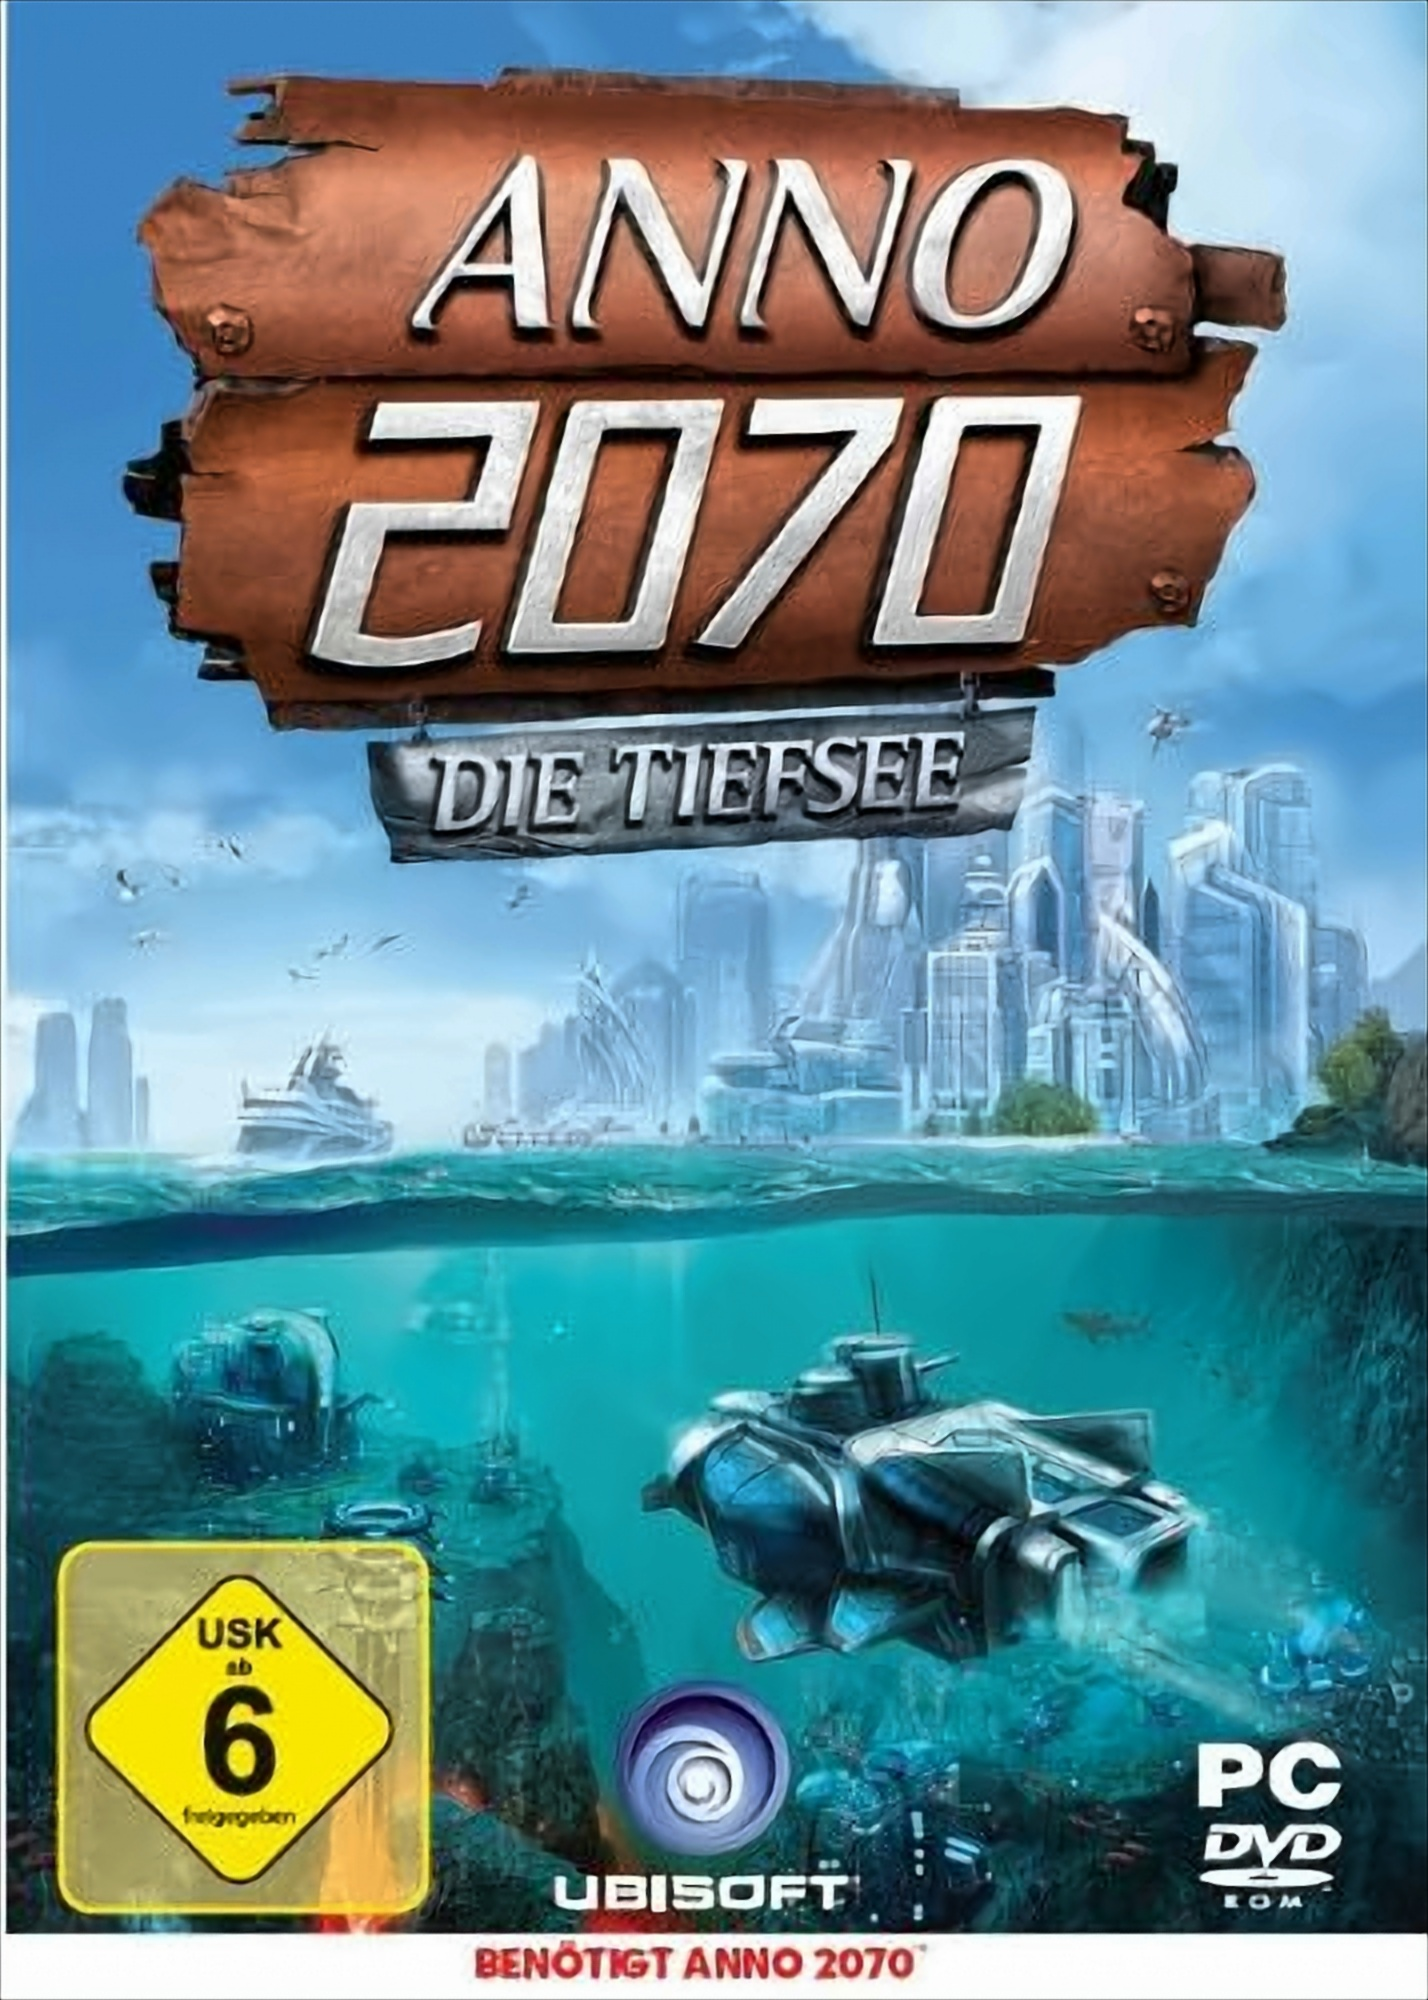 Die Tiefsee [PC] 2070: Anno -